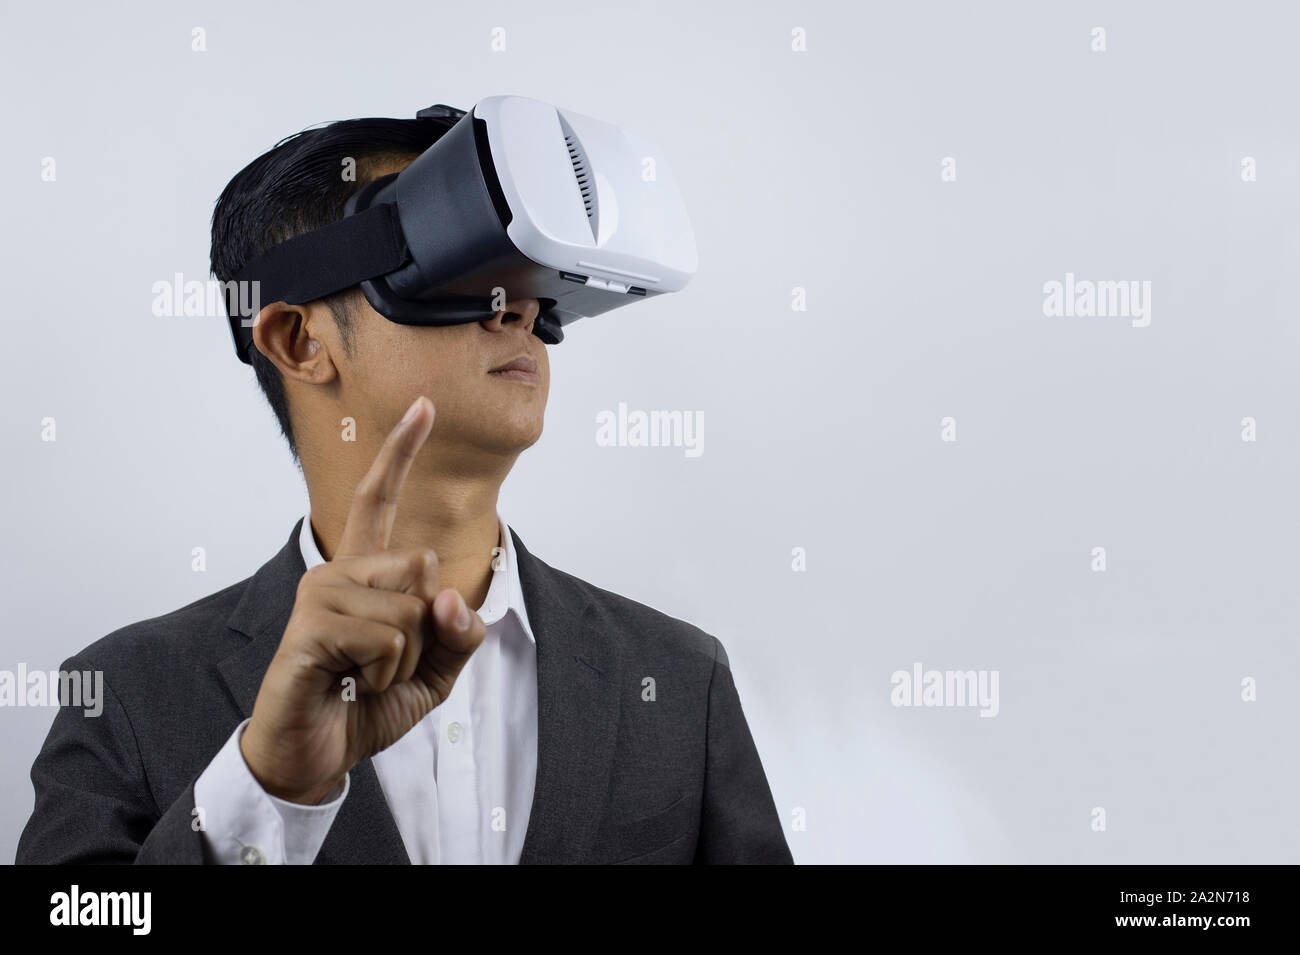 Mann in einem Anzug mit Virtual reality Brillen auf seinem Kopf. Auf weissem Hintergrund. (Selec tive fogus) Stockfoto